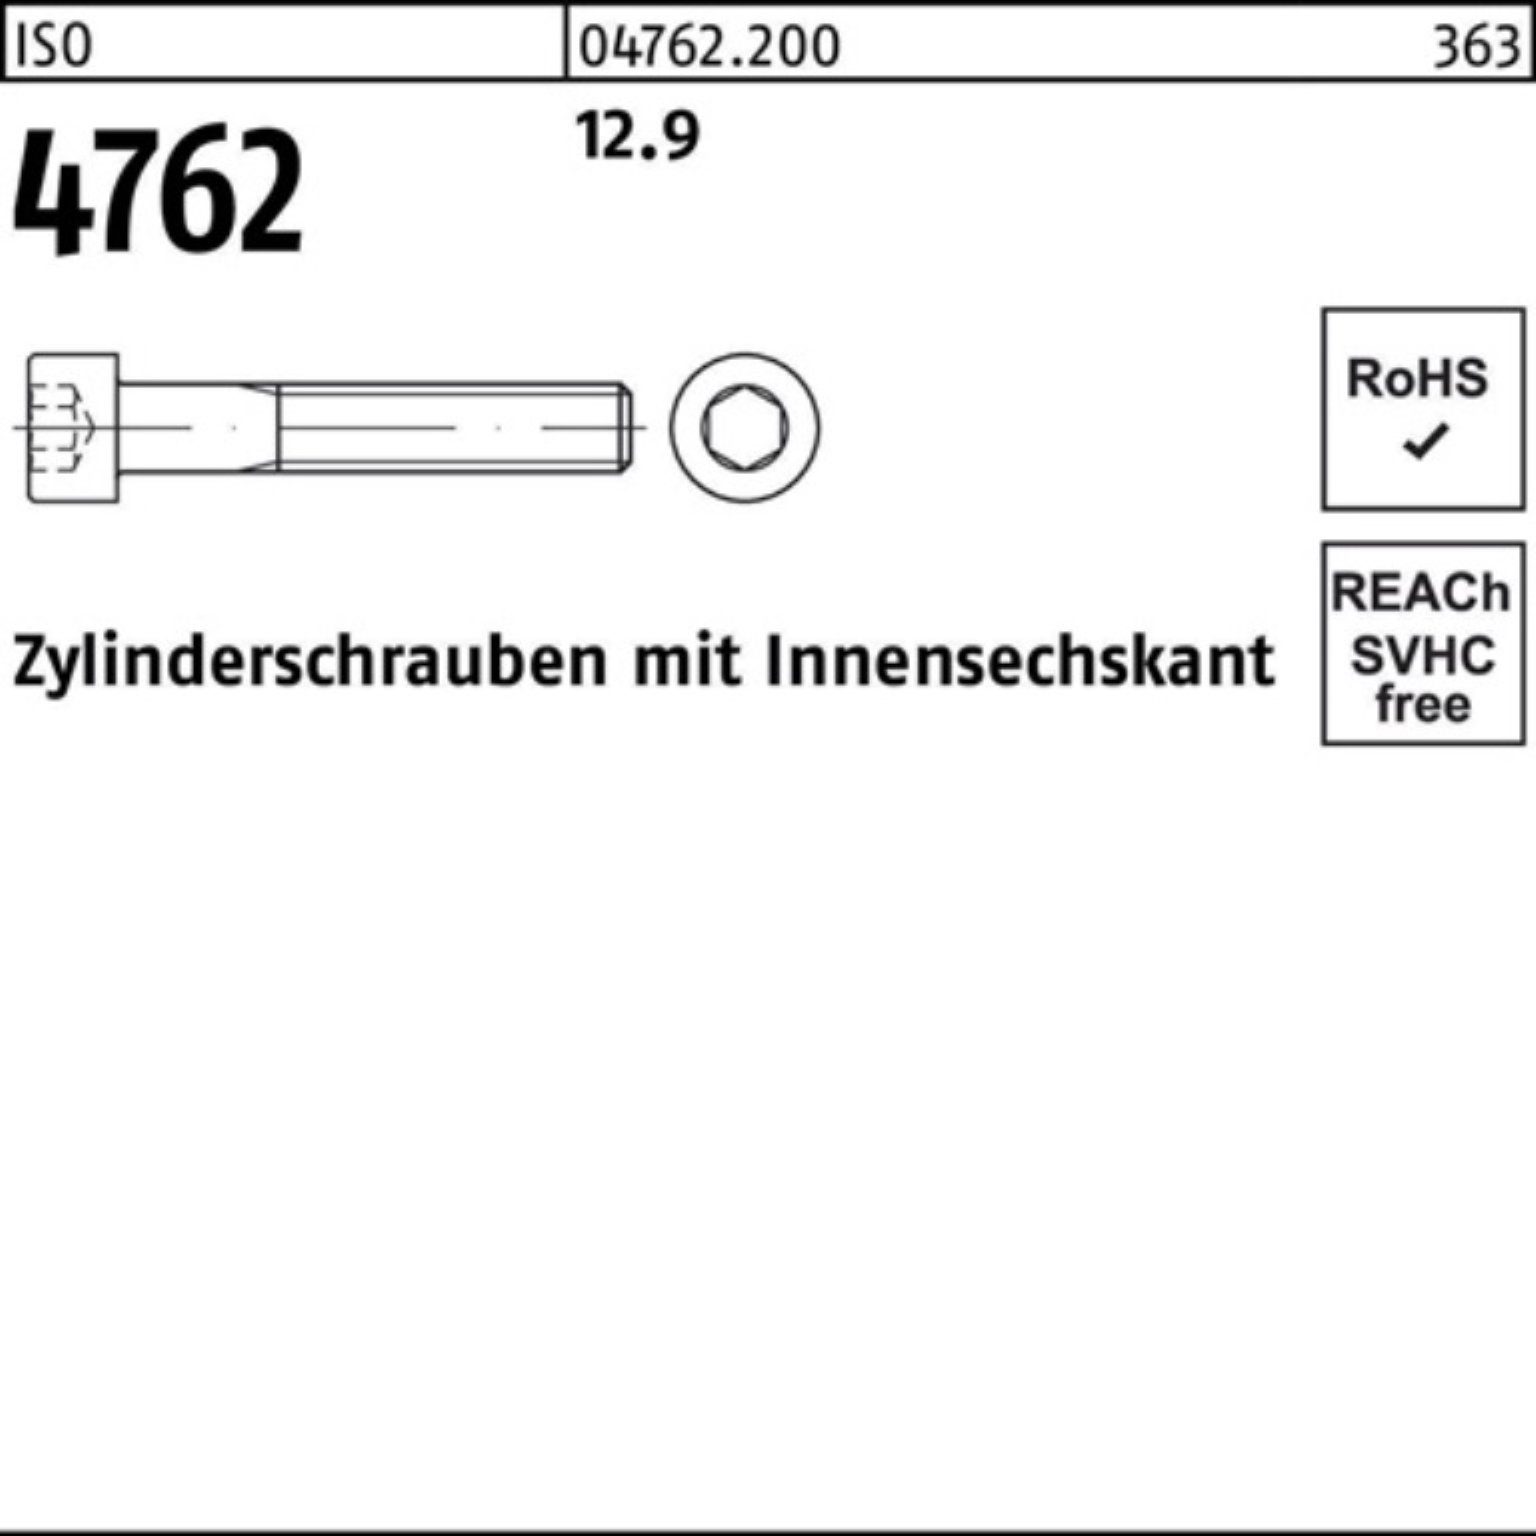 Pack Zylinderschraube Reyher 4762 M6x 45 Innen-6kt Stück 200 200er ISO Zylinderschraube 12.9